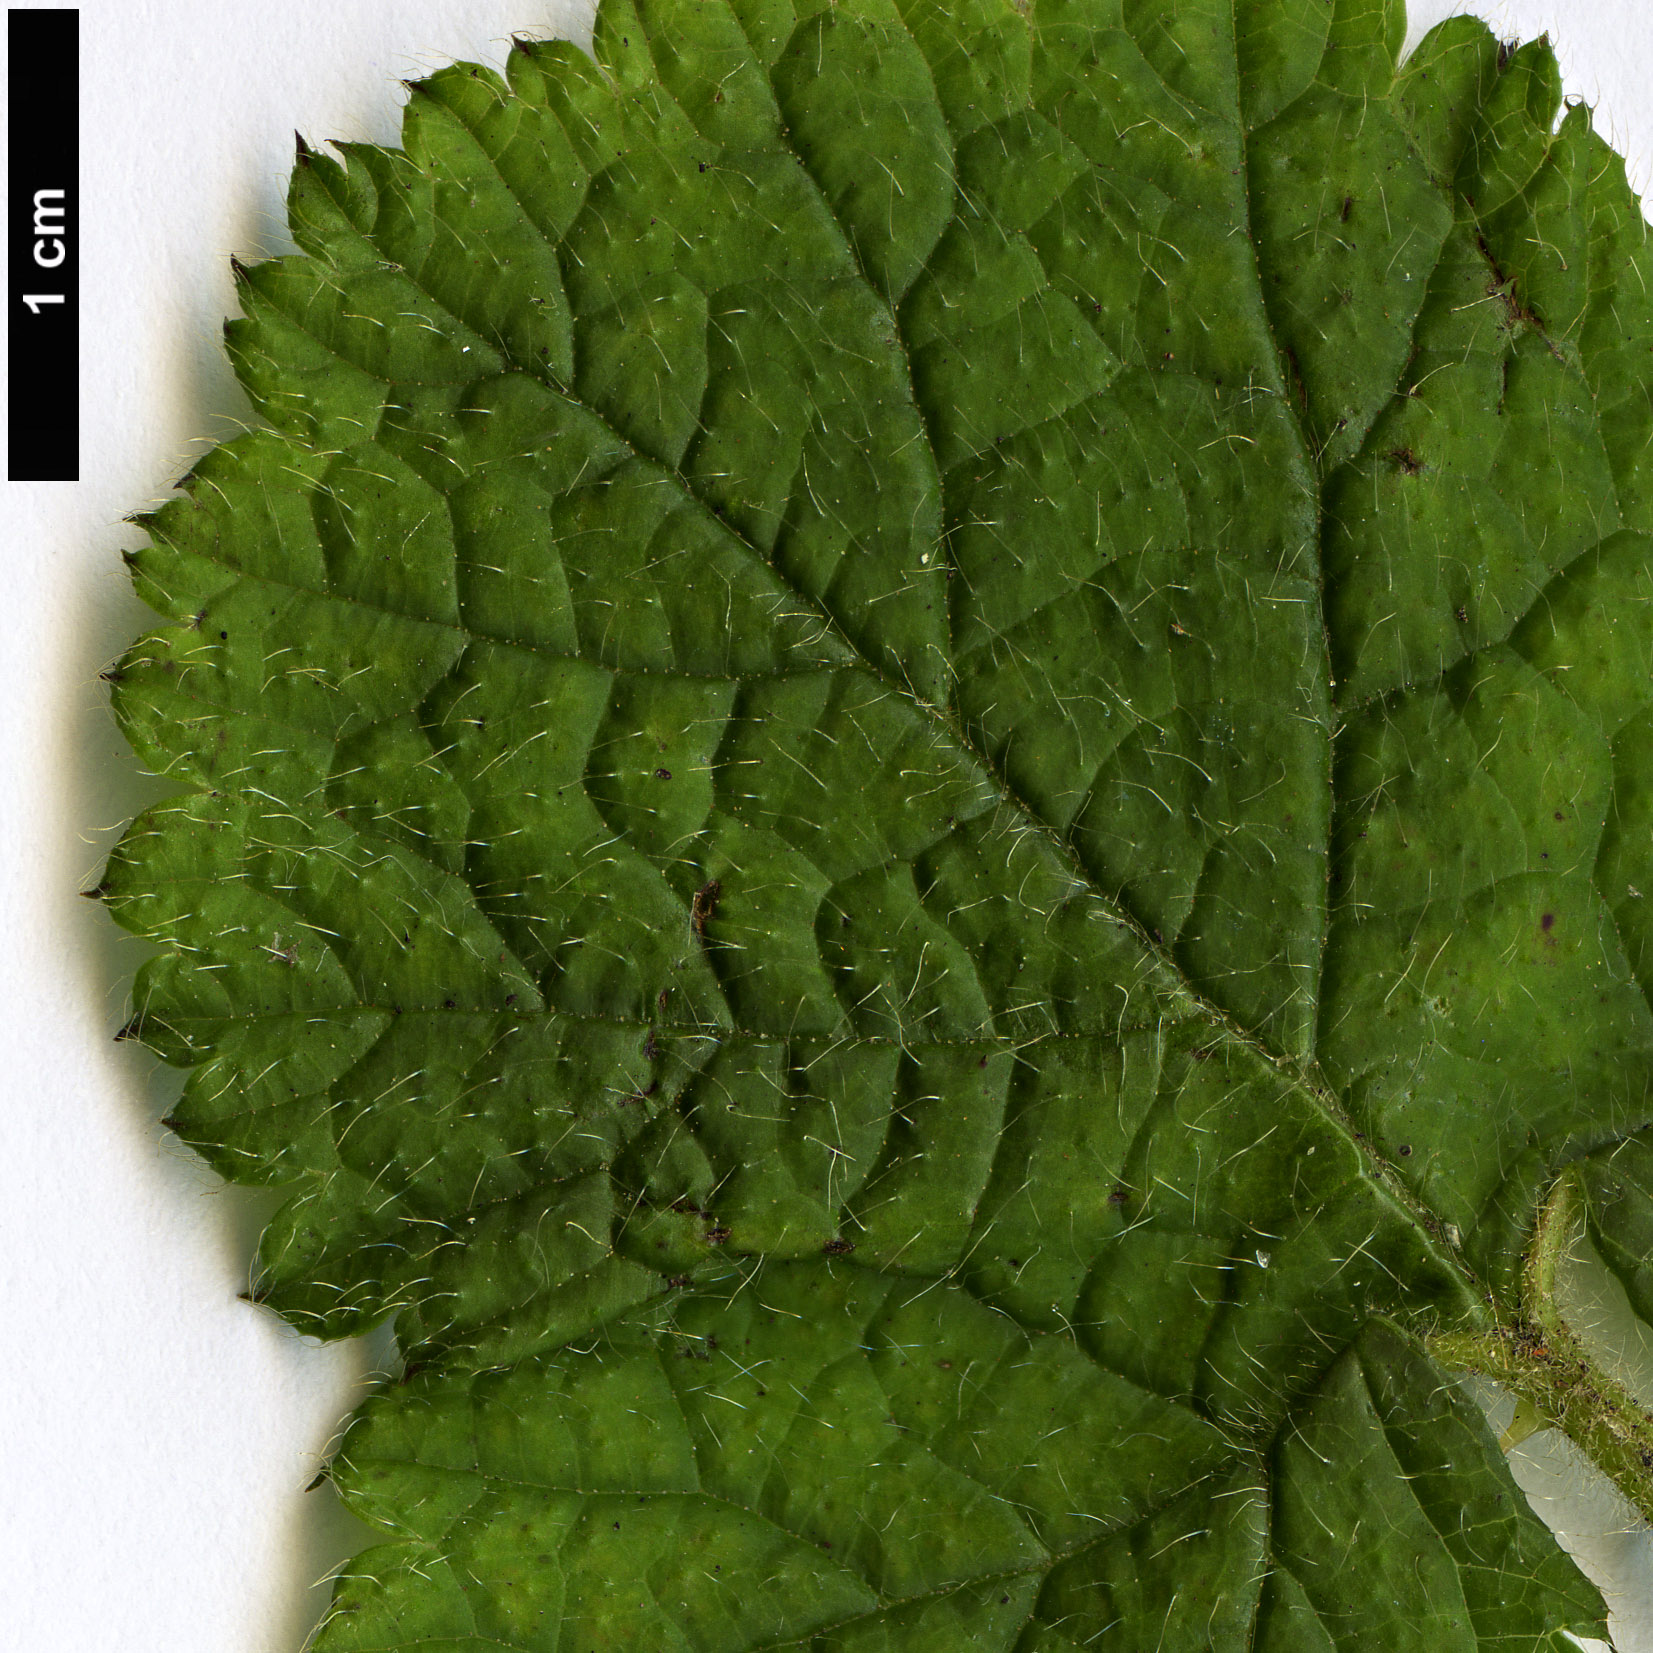 High resolution image: Family: Rosaceae - Genus: Rubus - Taxon: pectinellus